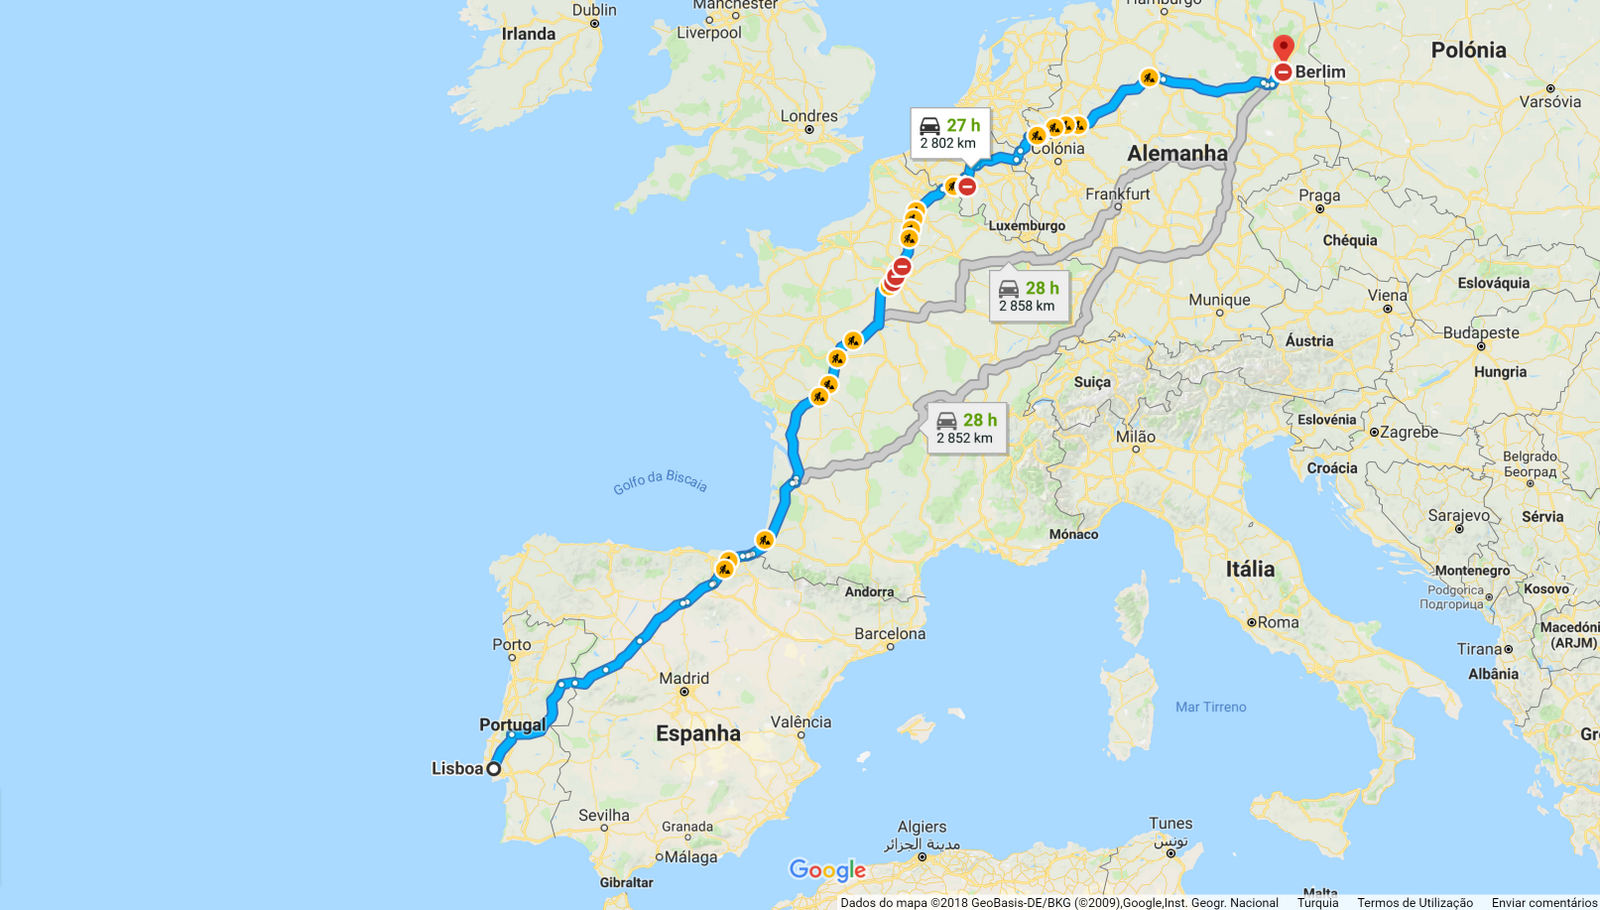 Localização portugal e lisboa alfinete no marcador de mapa fechado do  destino para turismo de viagem e conceito de viagem europa